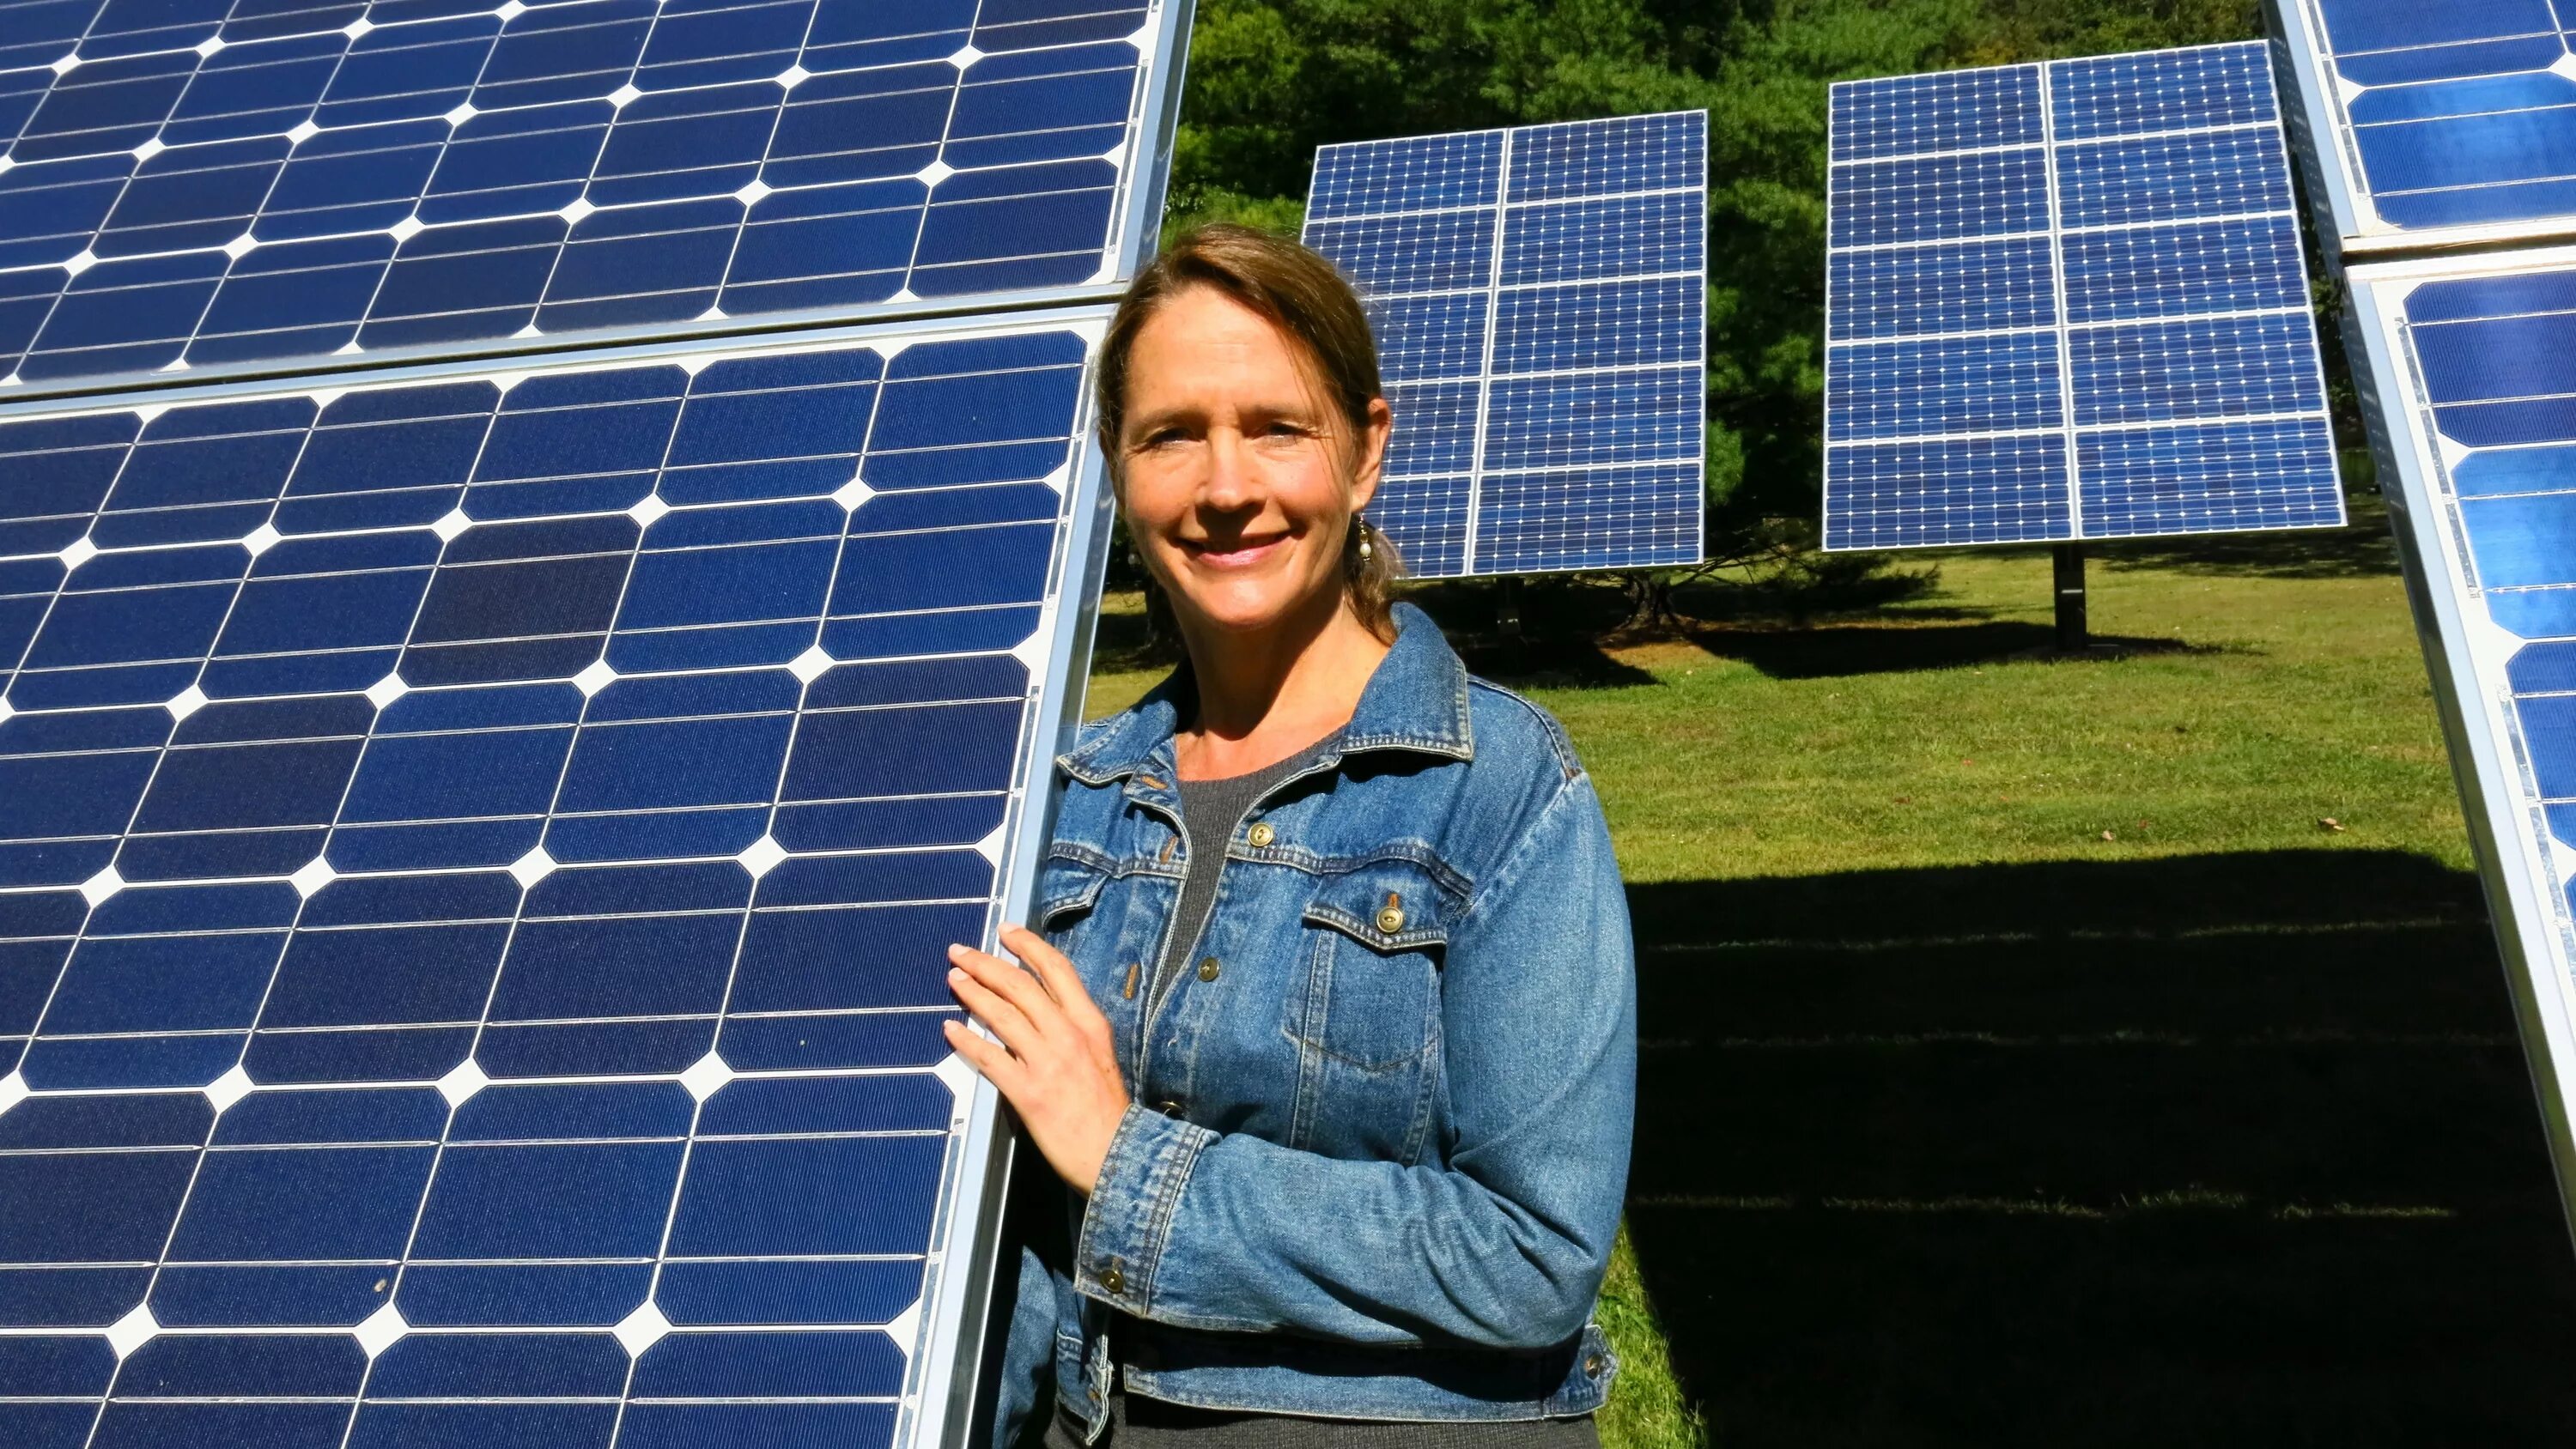 Green Solar 540 WT Solar Panel. Солнечные панели девушка. Круглые солнечные панели. Solarstaff